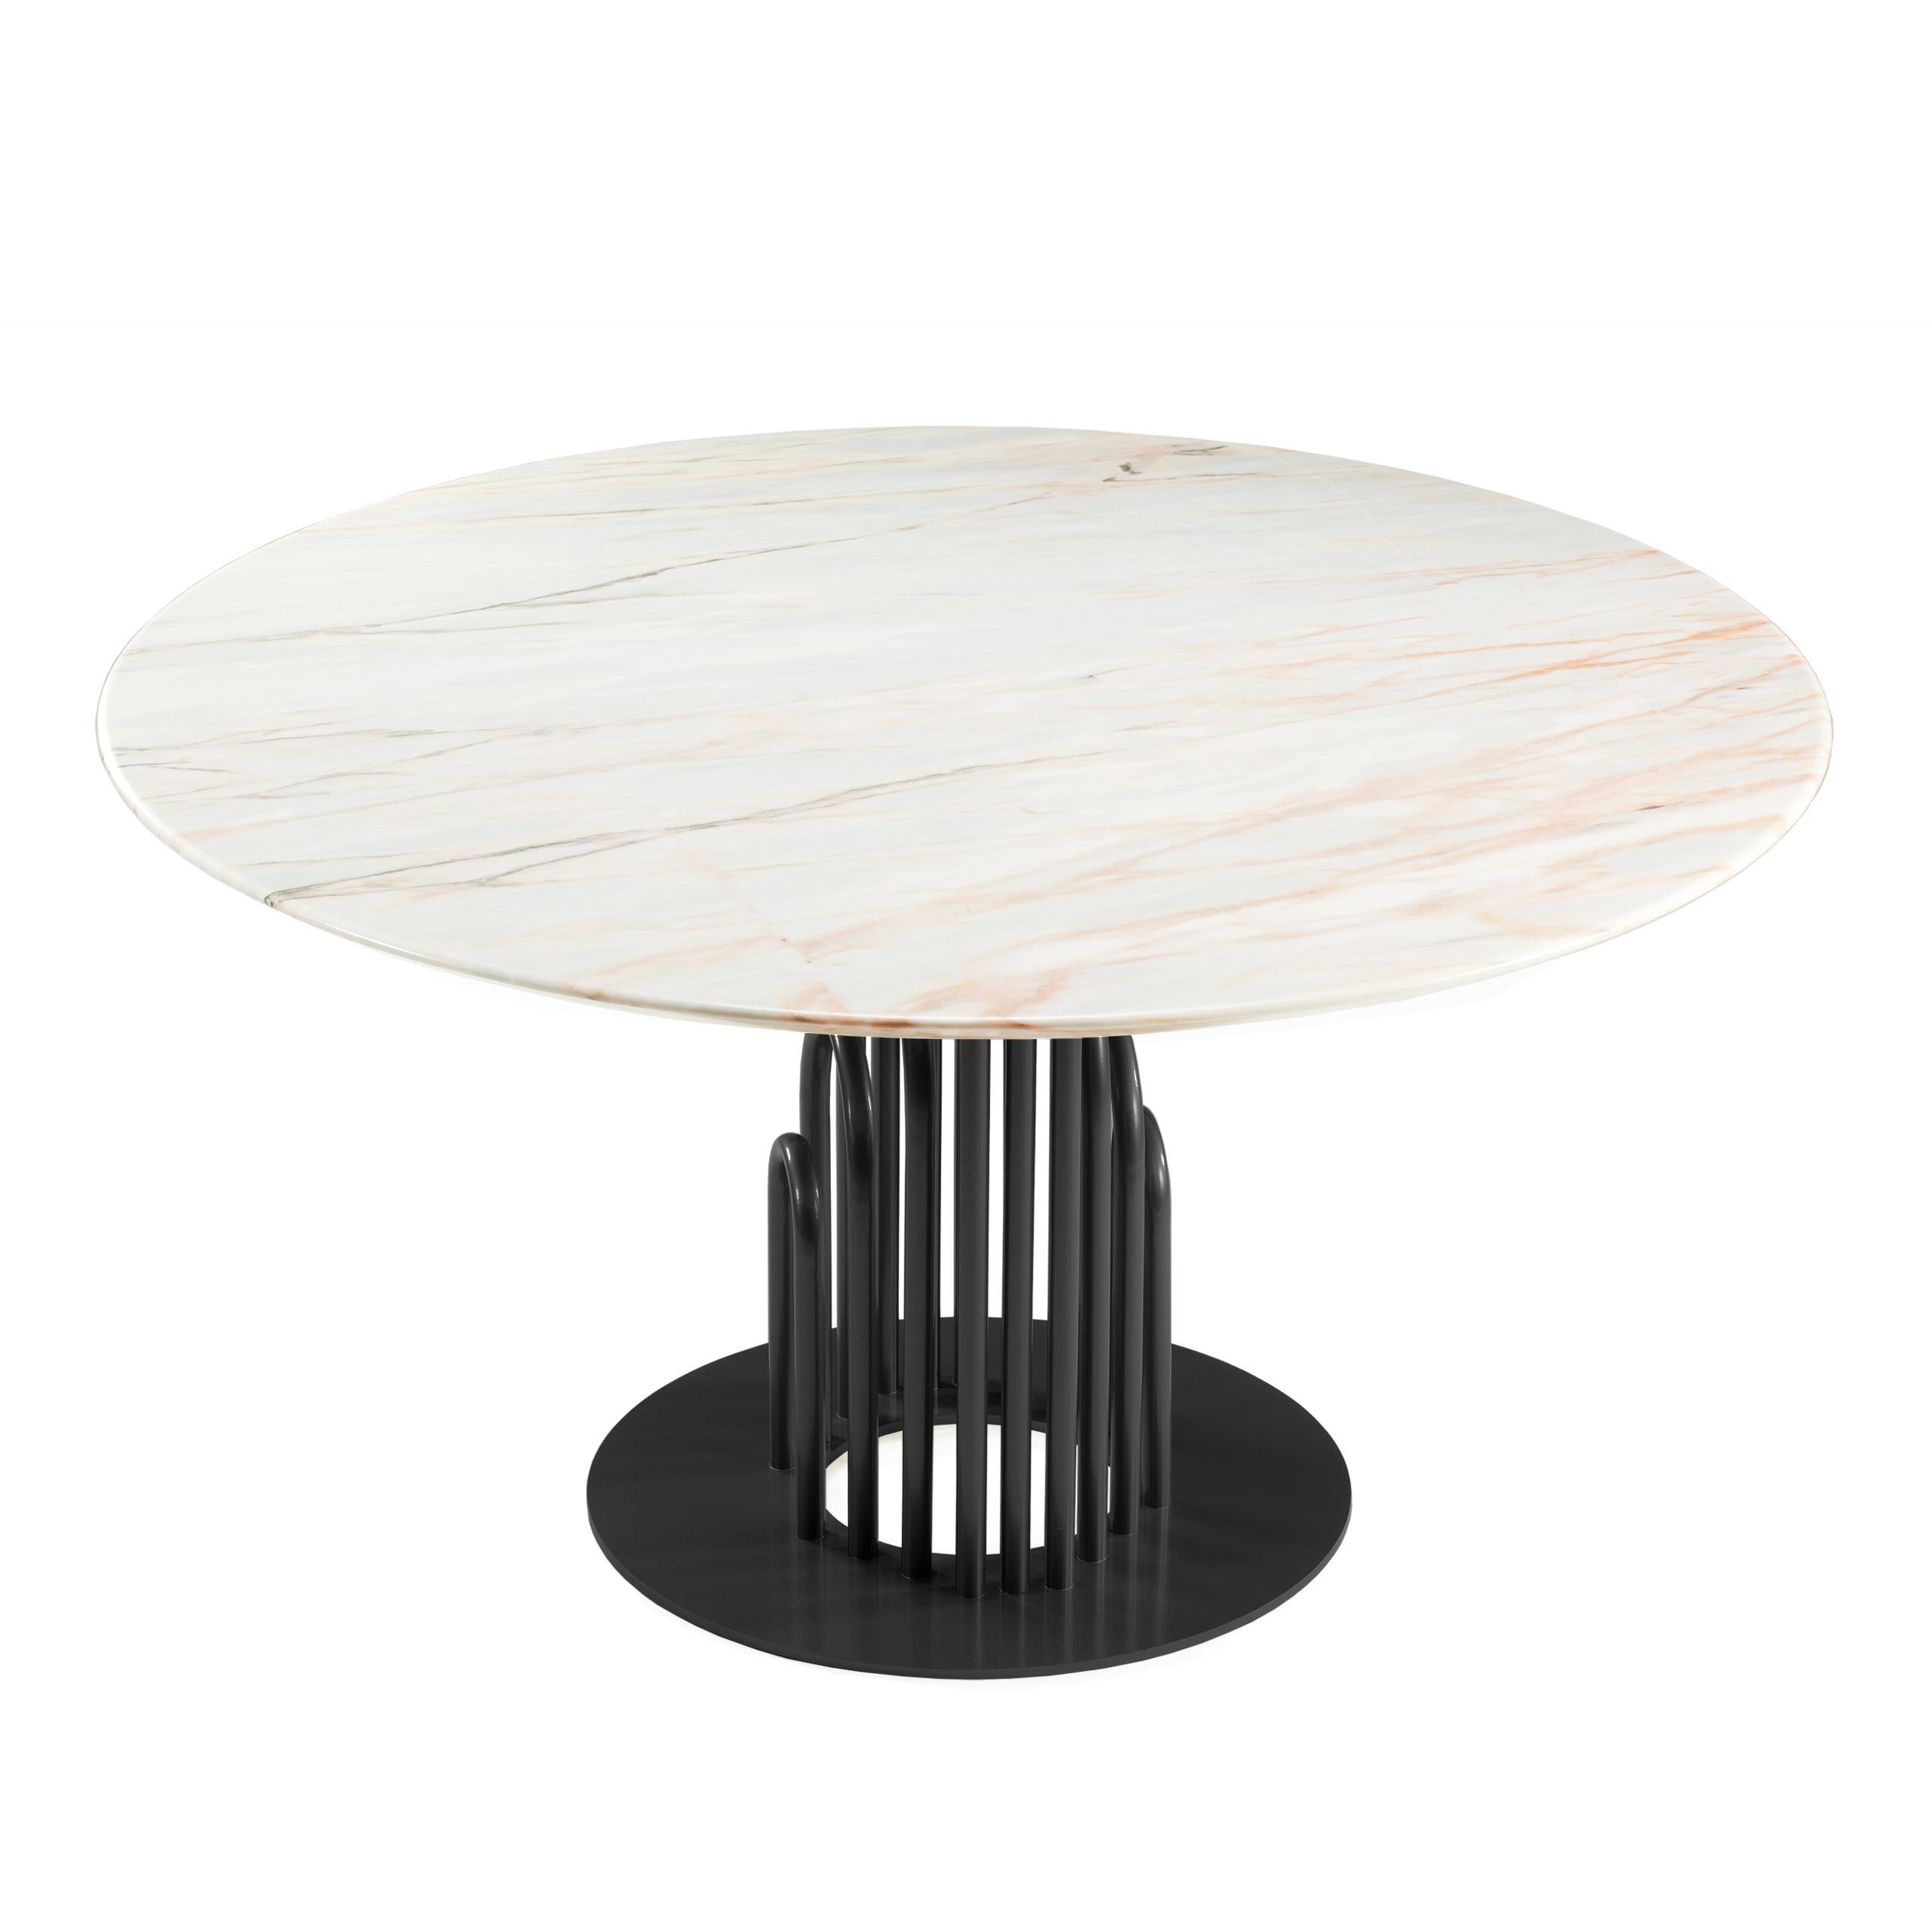 Bara ist ein raffinierter und einzigartiger Esstisch, der ein komplexes, röhrenförmiges, lackiertes Metallgestell mit einer schlichten, aber schönen Estremoz-Marmorplatte verbindet, die von den Linien des Jugendstils inspiriert ist. Es ist definitiv